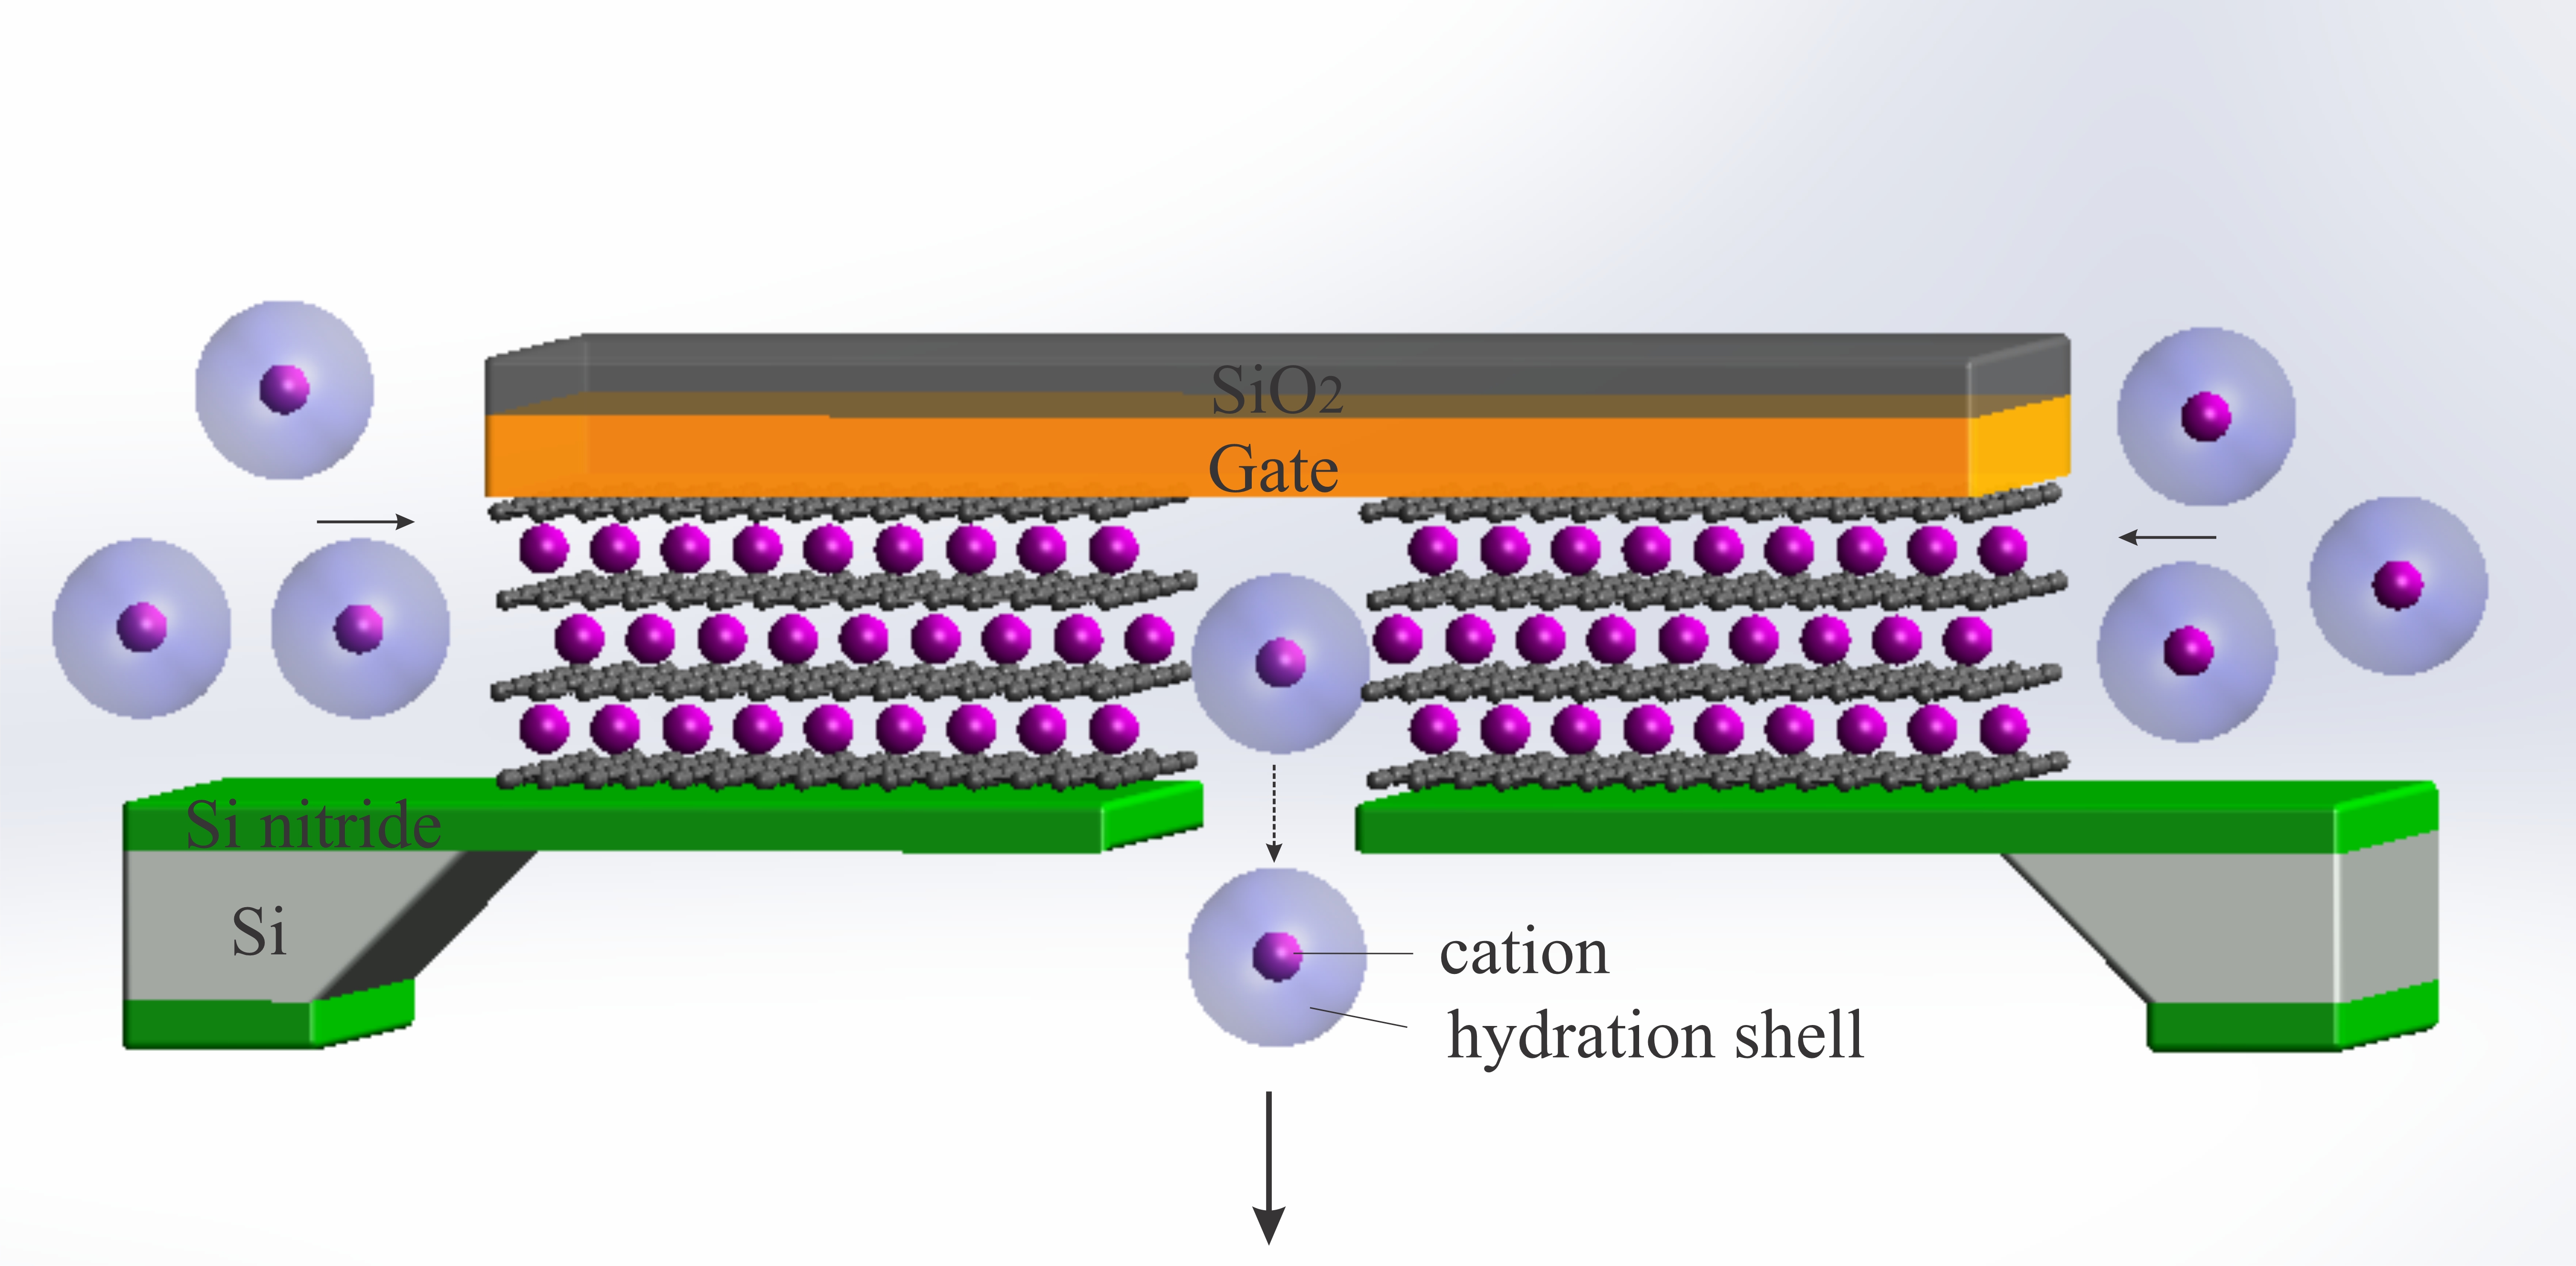 將離子晶體管縮小到極限 - 由 3 埃大小的石墨烯通道製成的原子級離子晶體管的示意圖。施加電勢以模擬生物通道壁上的電荷，並使離子嵌入和可滲透的離子傳輸超過滲透閾值。